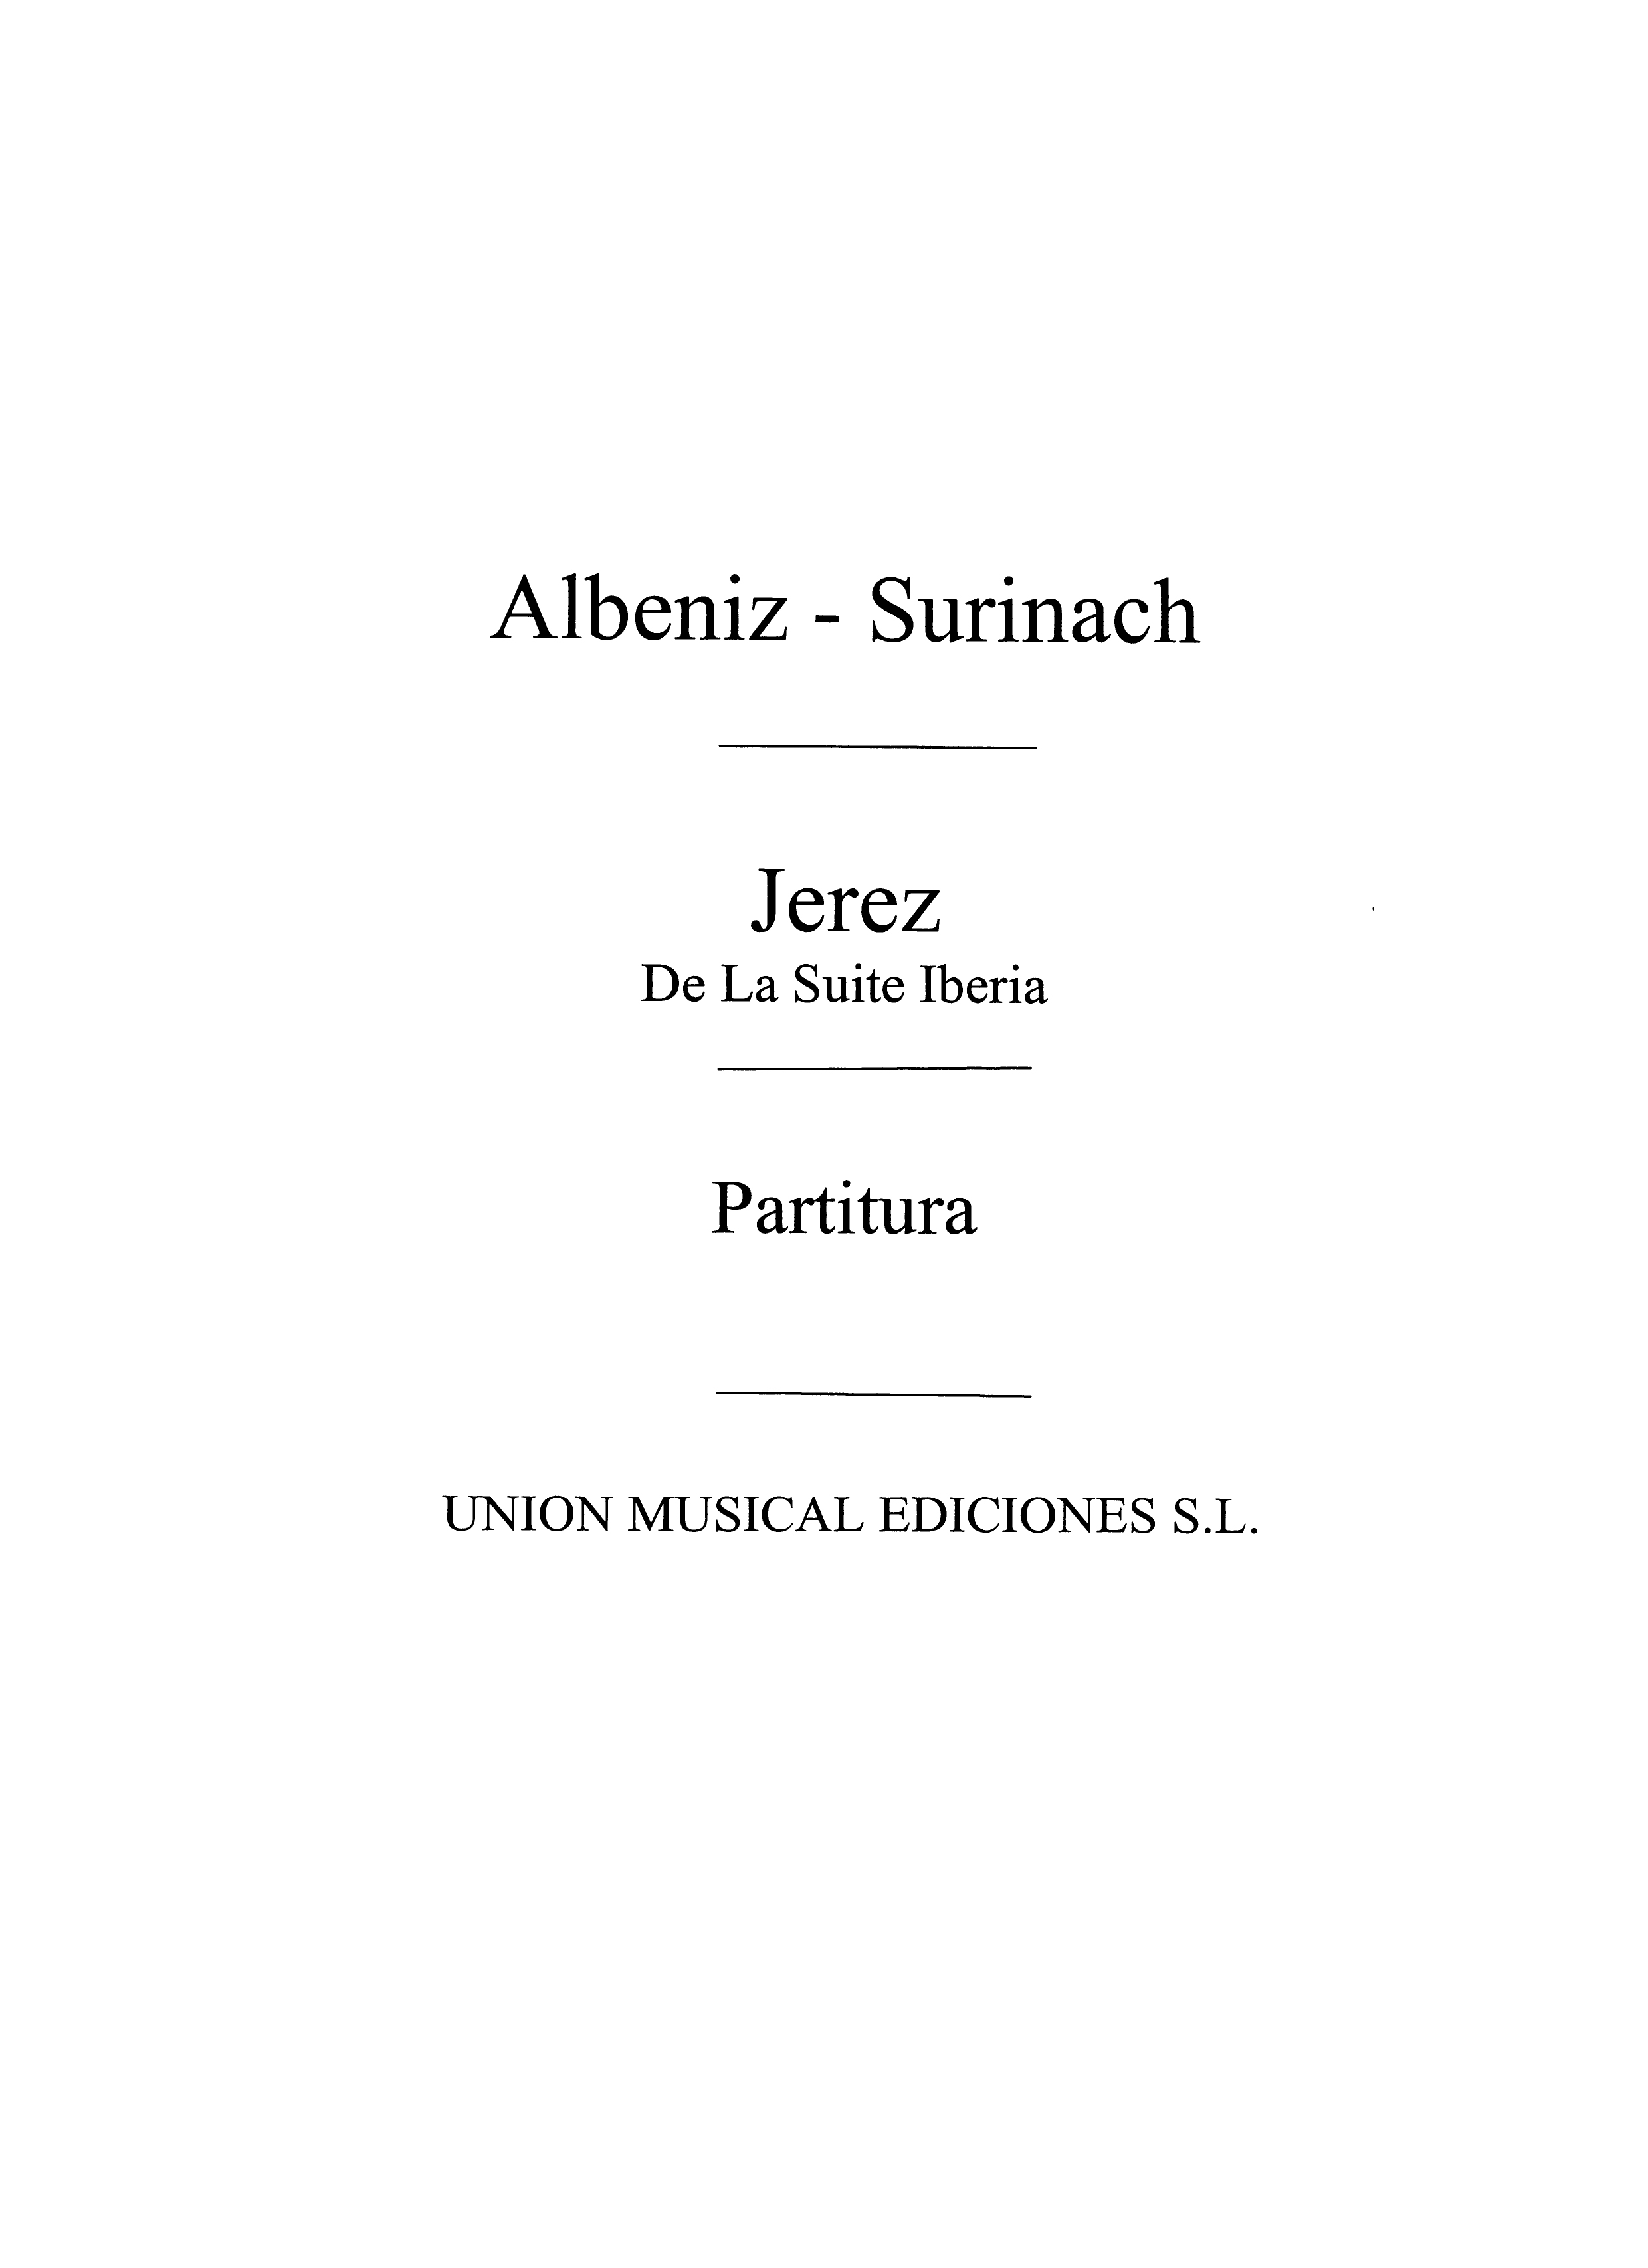 Albeniz Jerez from Iberia (Surinach)